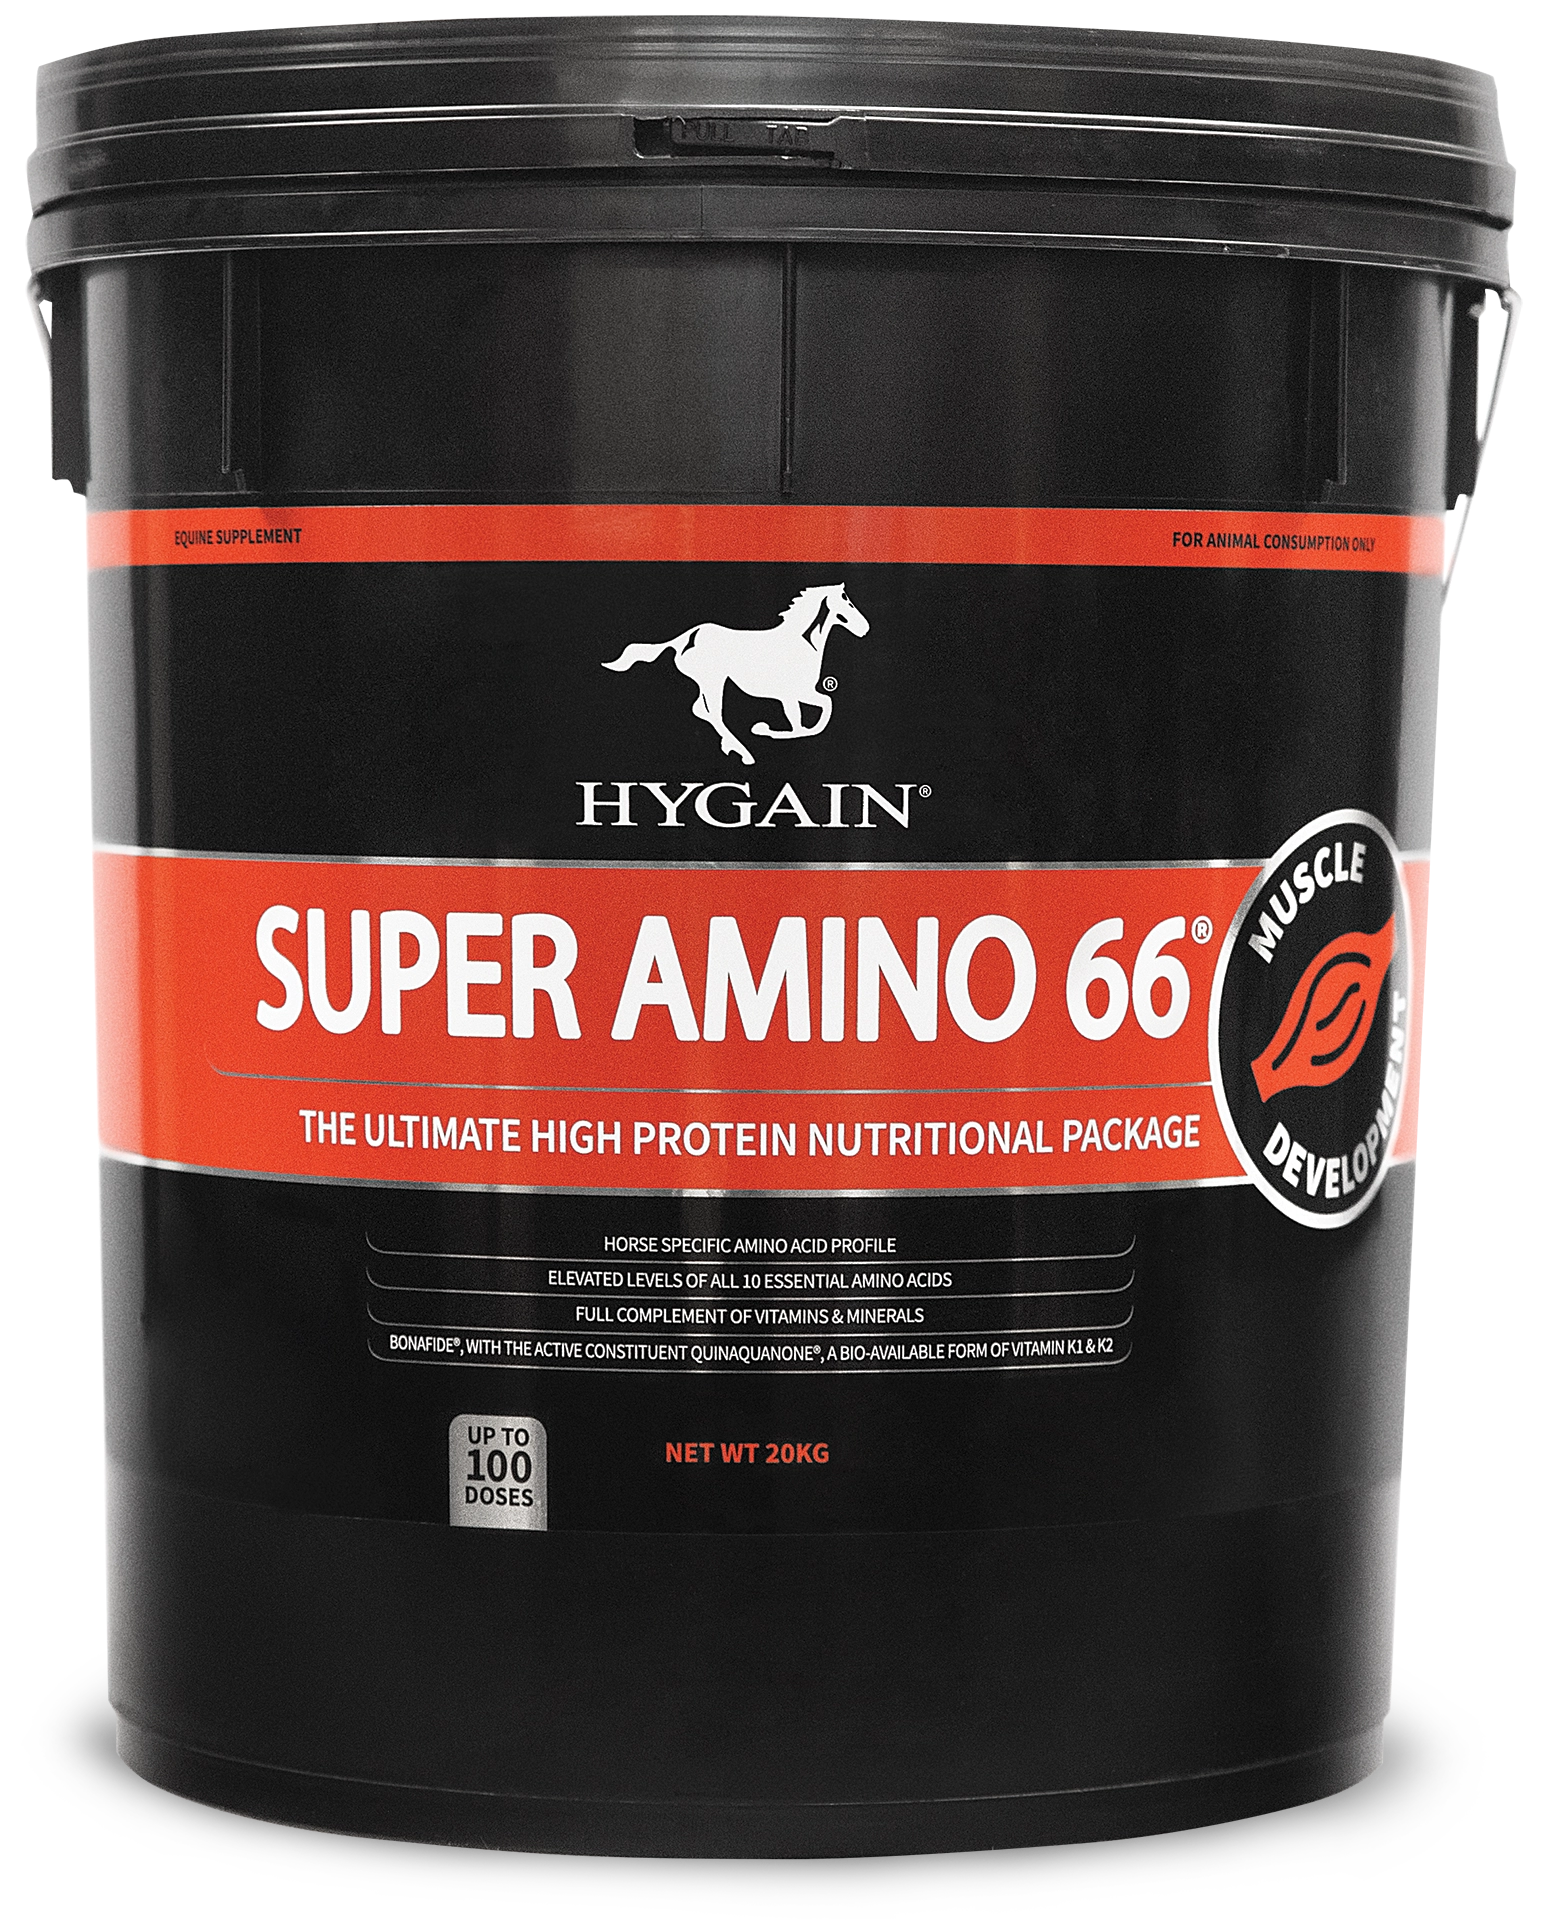 Hygain Super Amino 66 44LB